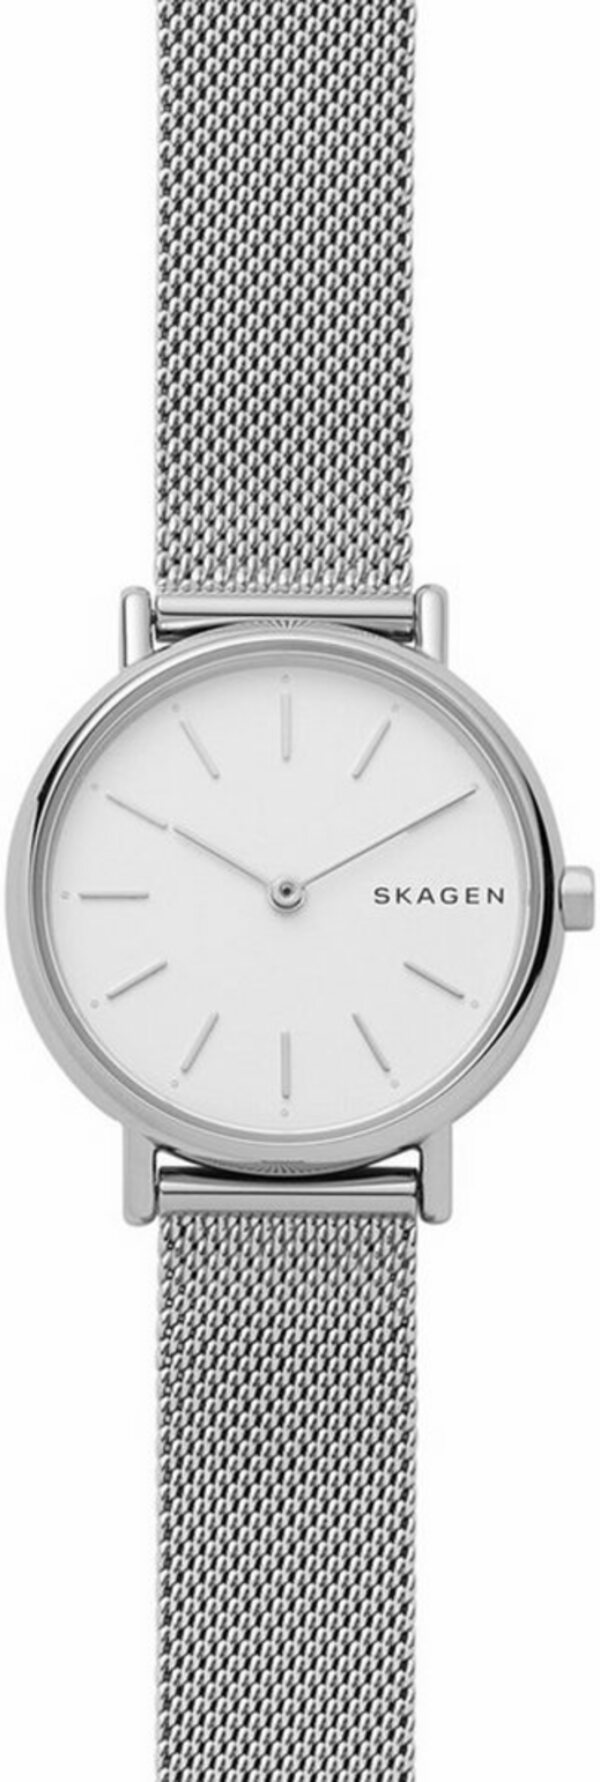 Bild 1 von Skagen Quarzuhr »Armbanduhr«